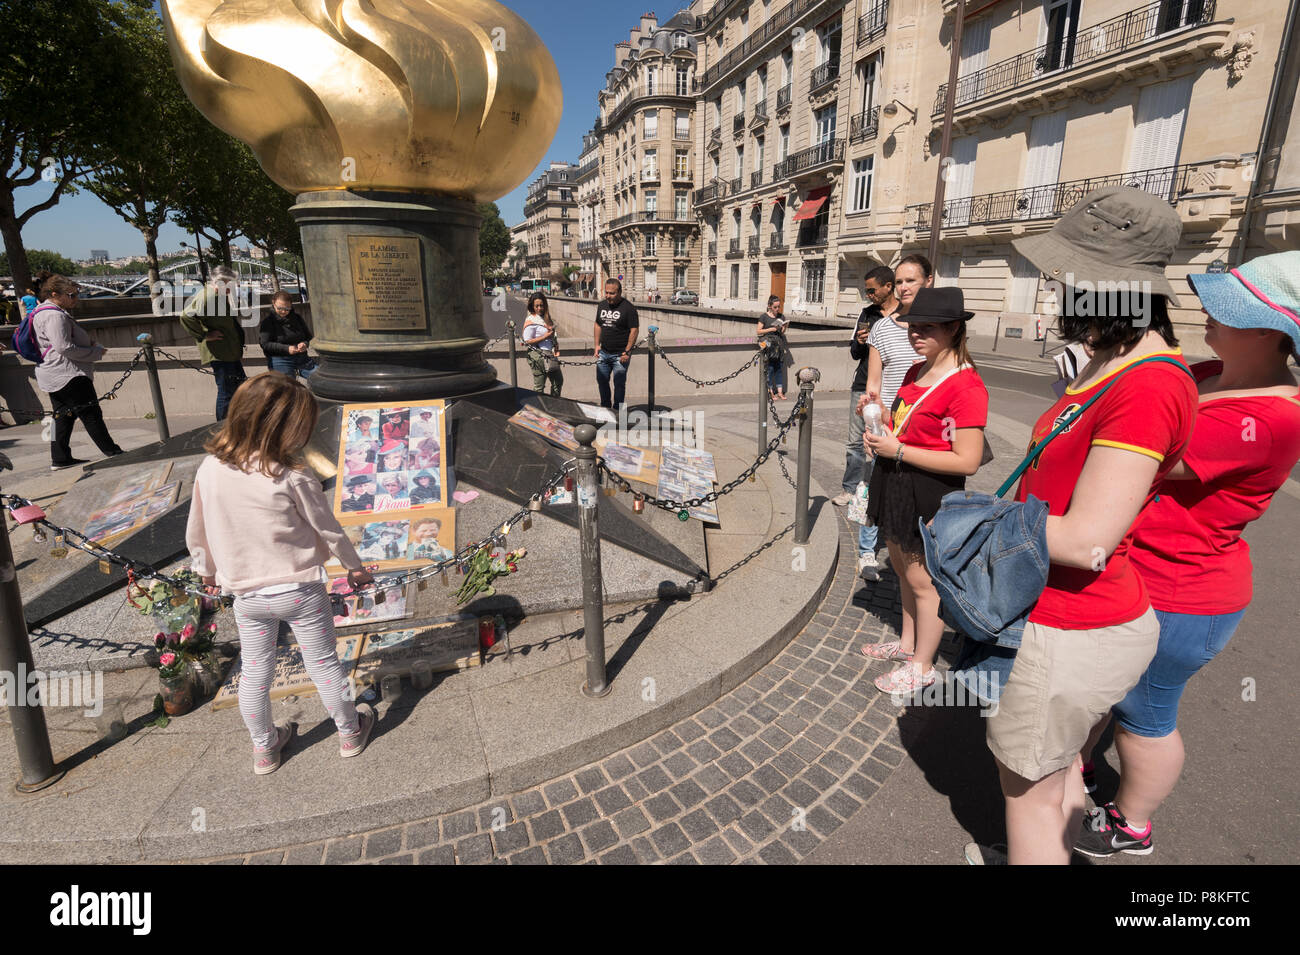 Parigi, Francia - 23 Giugno 2018: turisti si riuniscono di fronte alla fiamma della libertà, un memoriale non ufficiale di Diana, principessa di Galles. Foto Stock